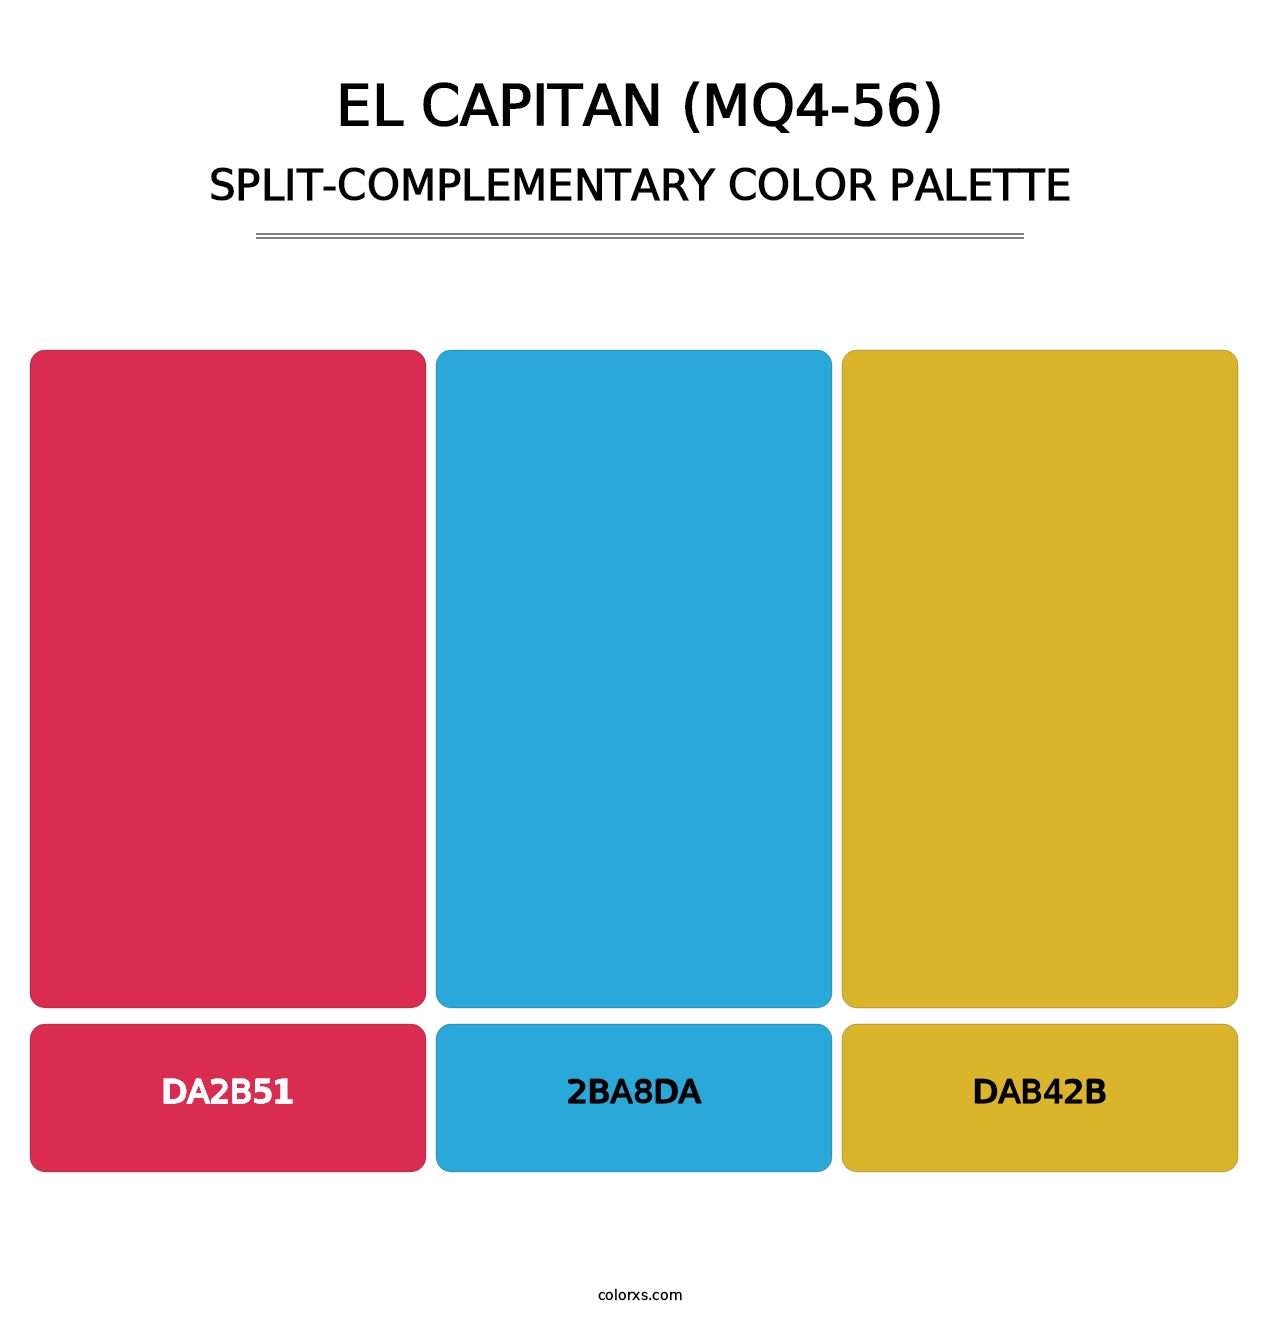 El Capitan (MQ4-56) - Split-Complementary Color Palette